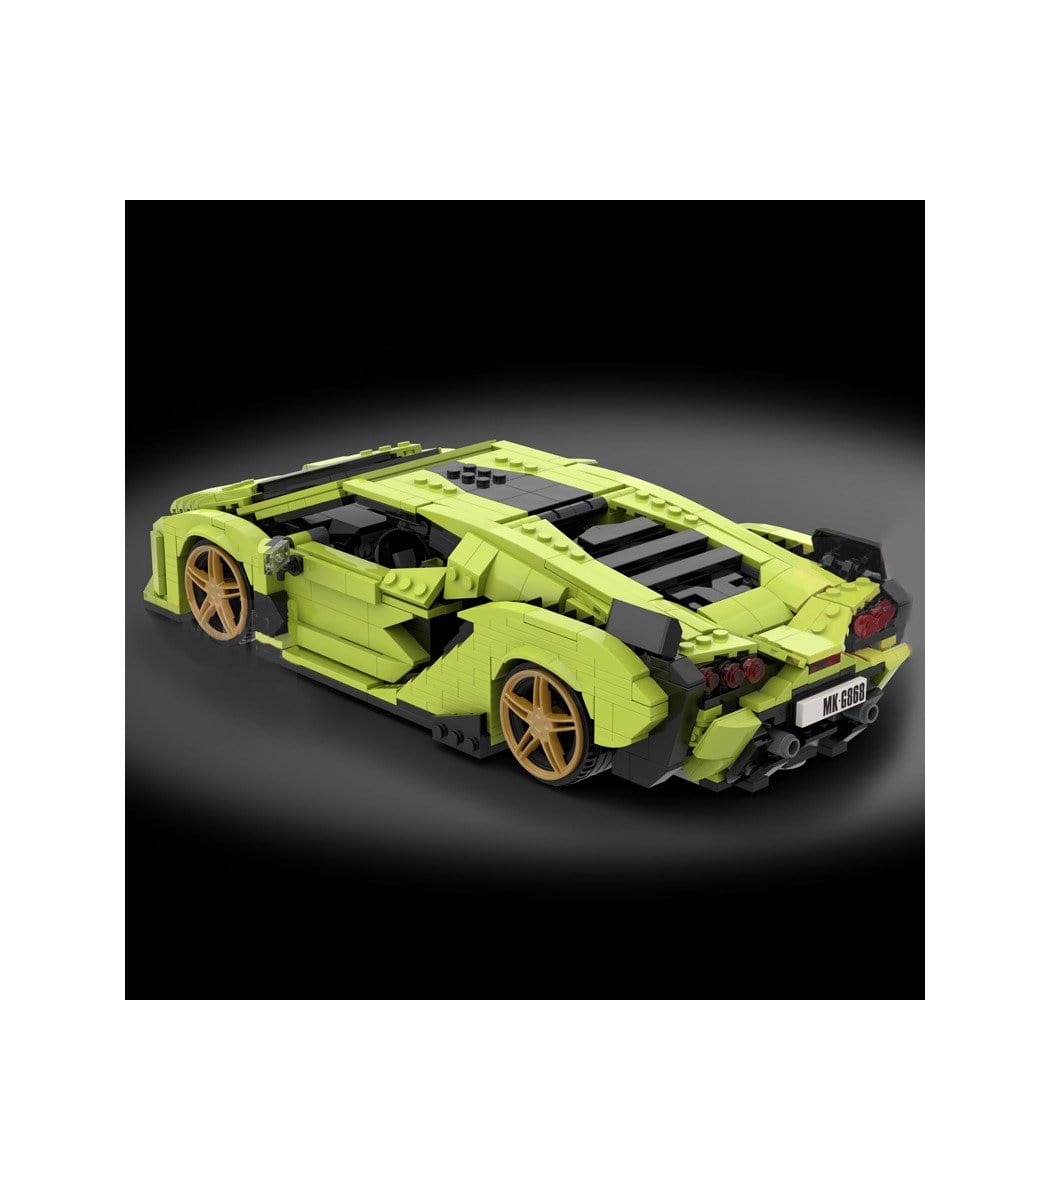 WSC Lego Mould King 10011 Lamborghini Sian Sports Car Building Blocks Toy Set